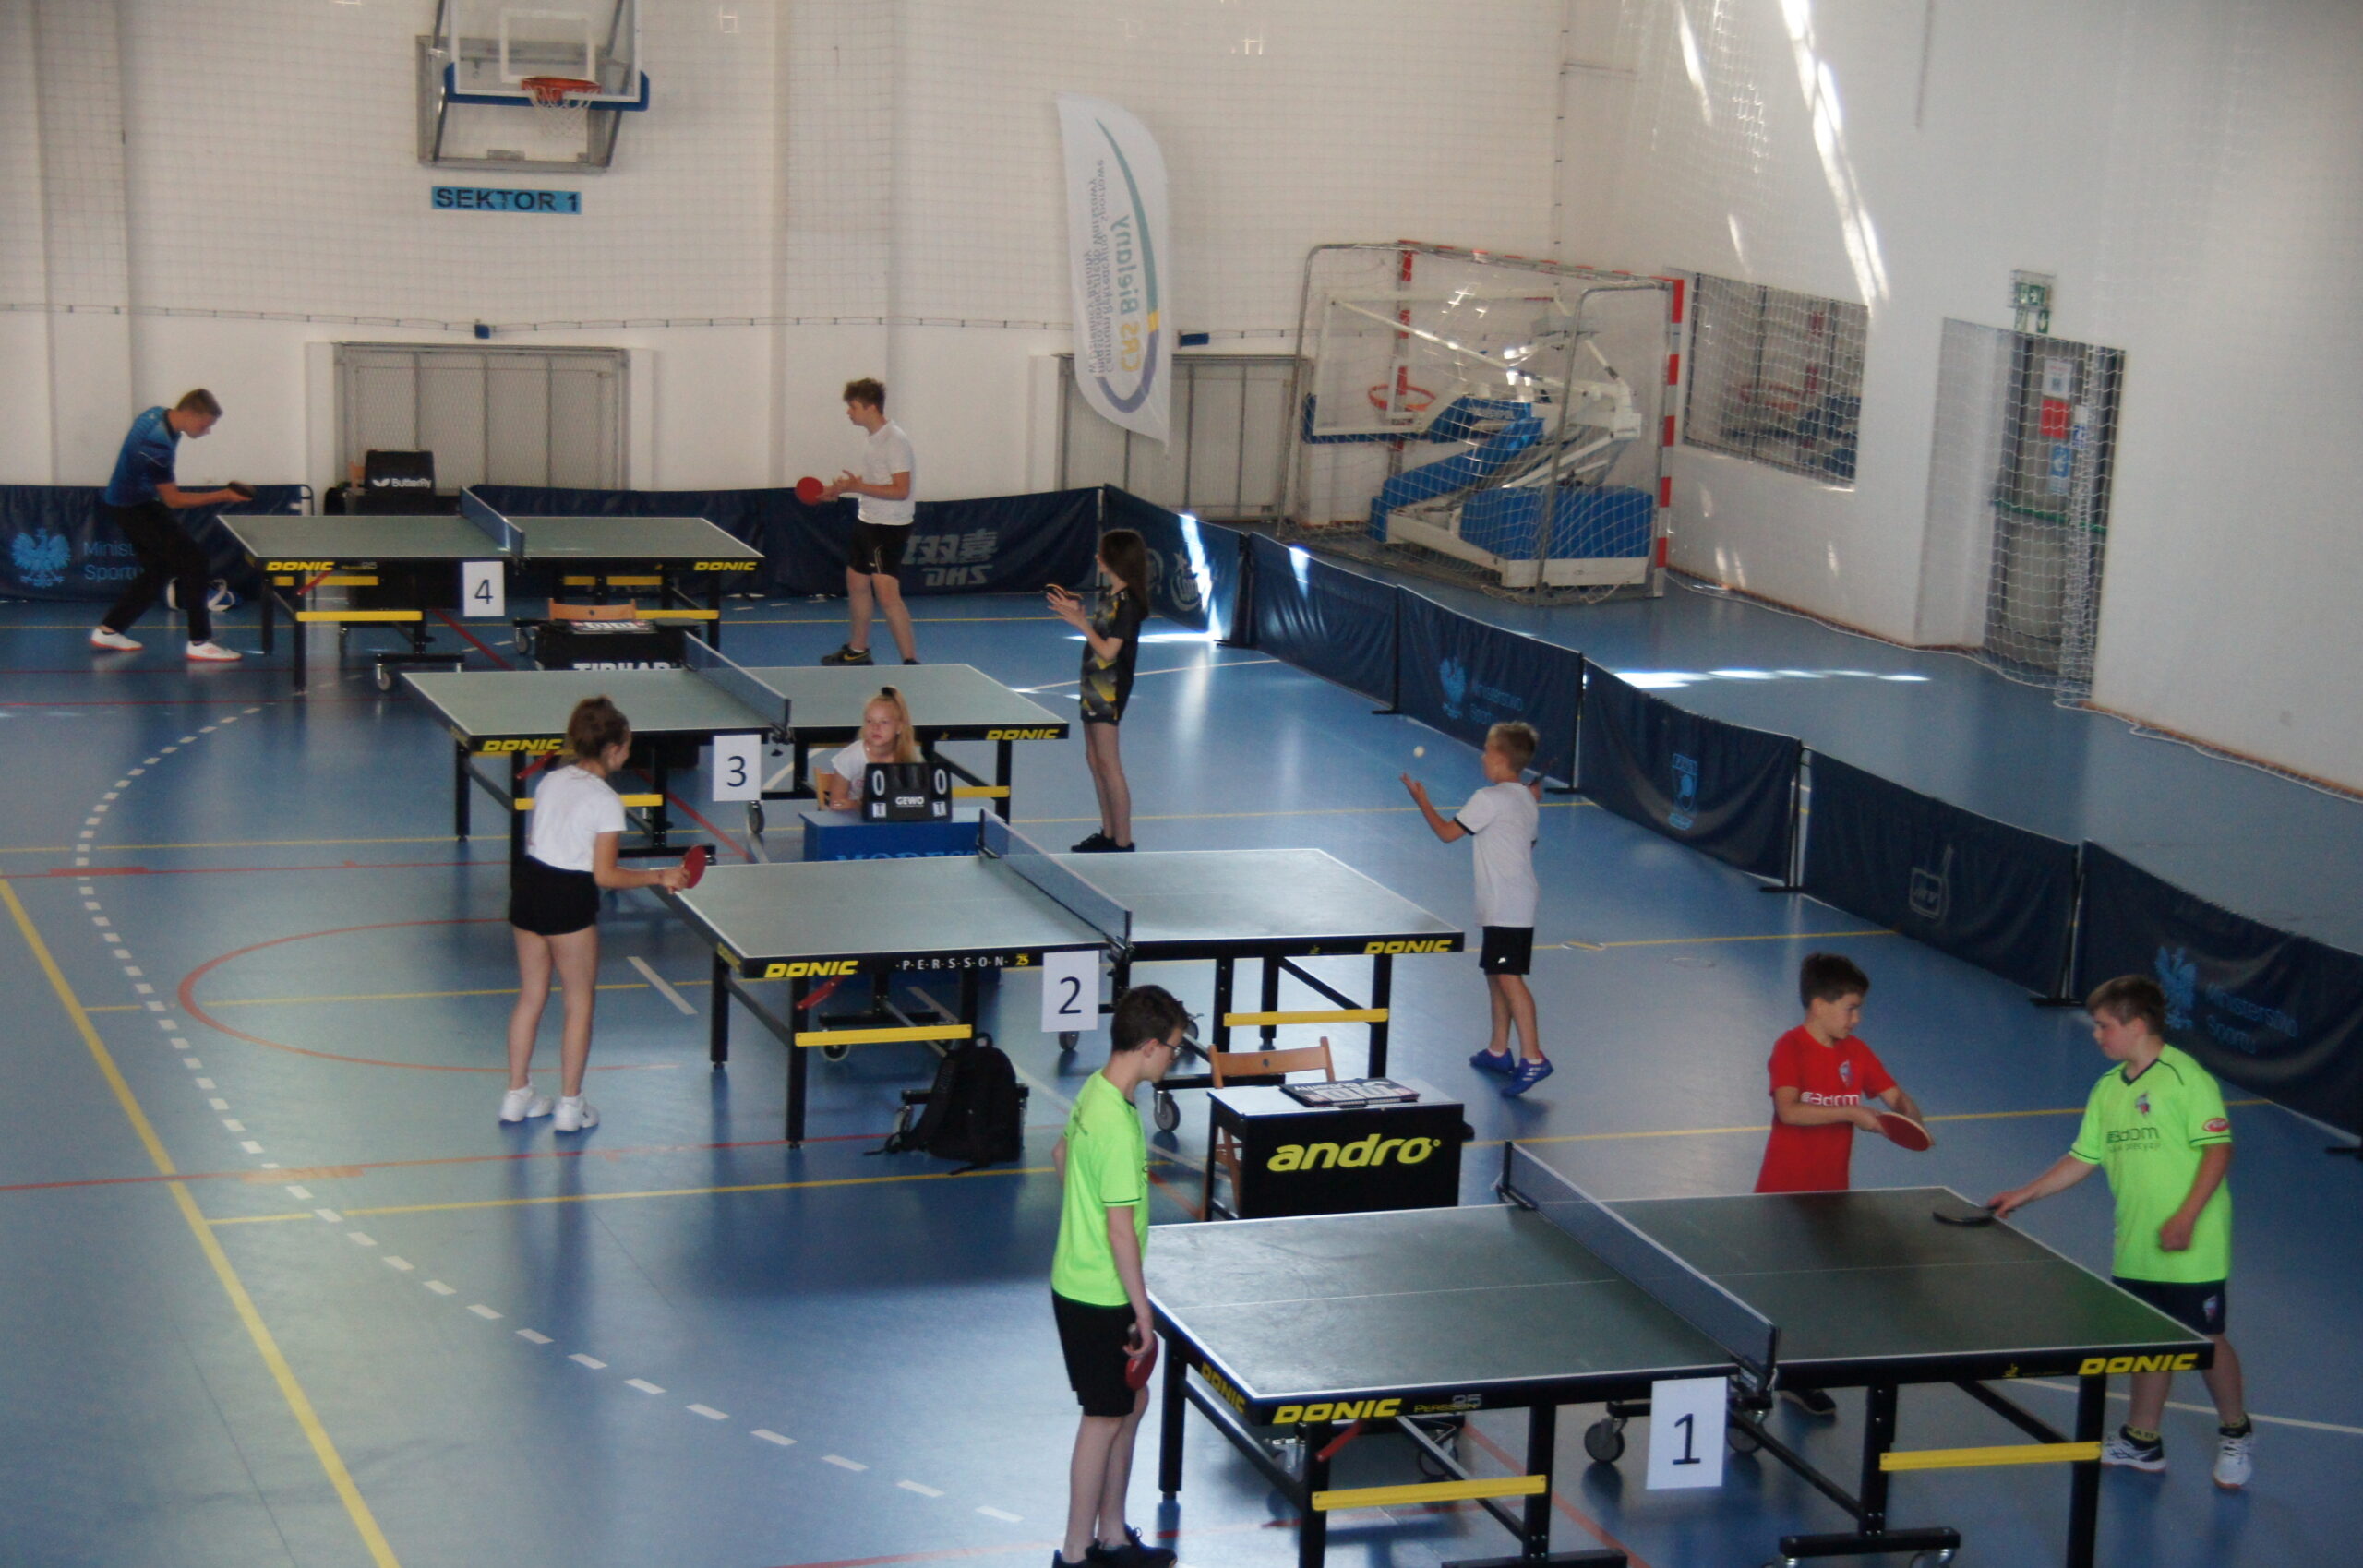 Zawodnicy grający w tenisa stołowego w hali sportowej.